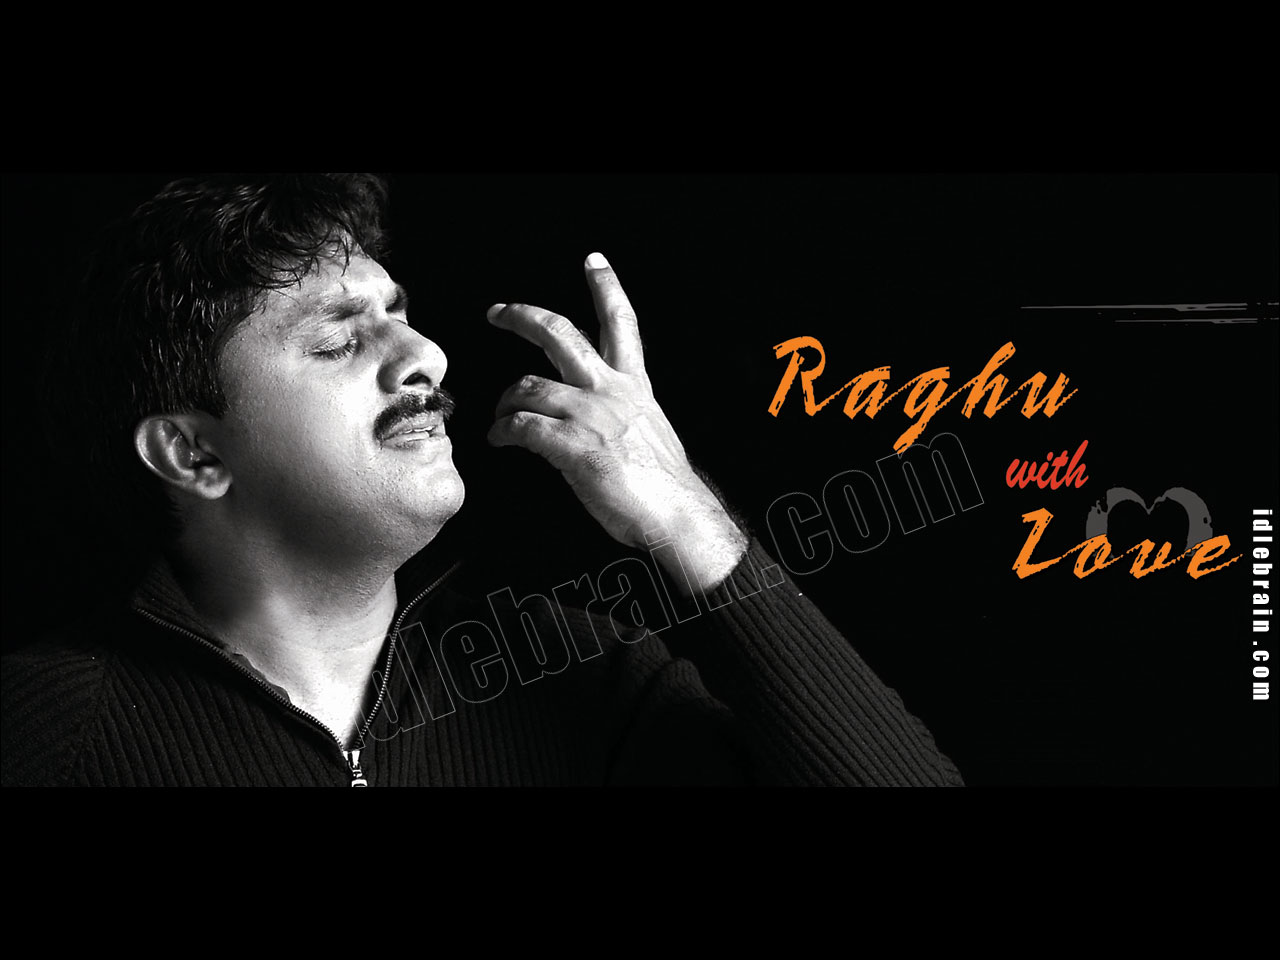 Raghu with love